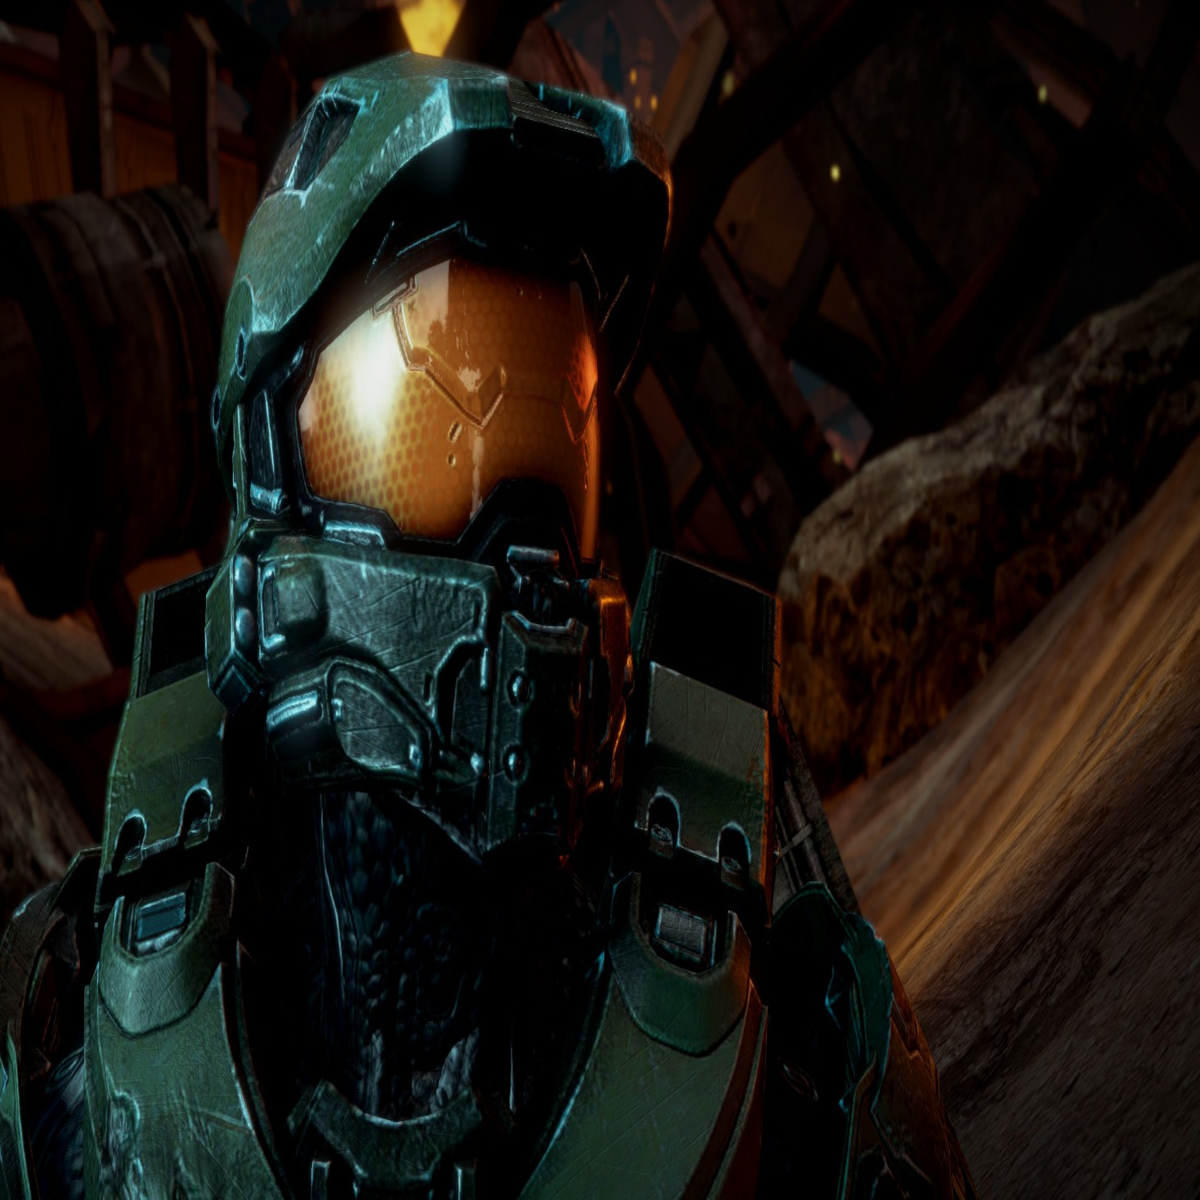 Halo 4 Master Chief in Halo 3's Campaign FULL file - ModDB